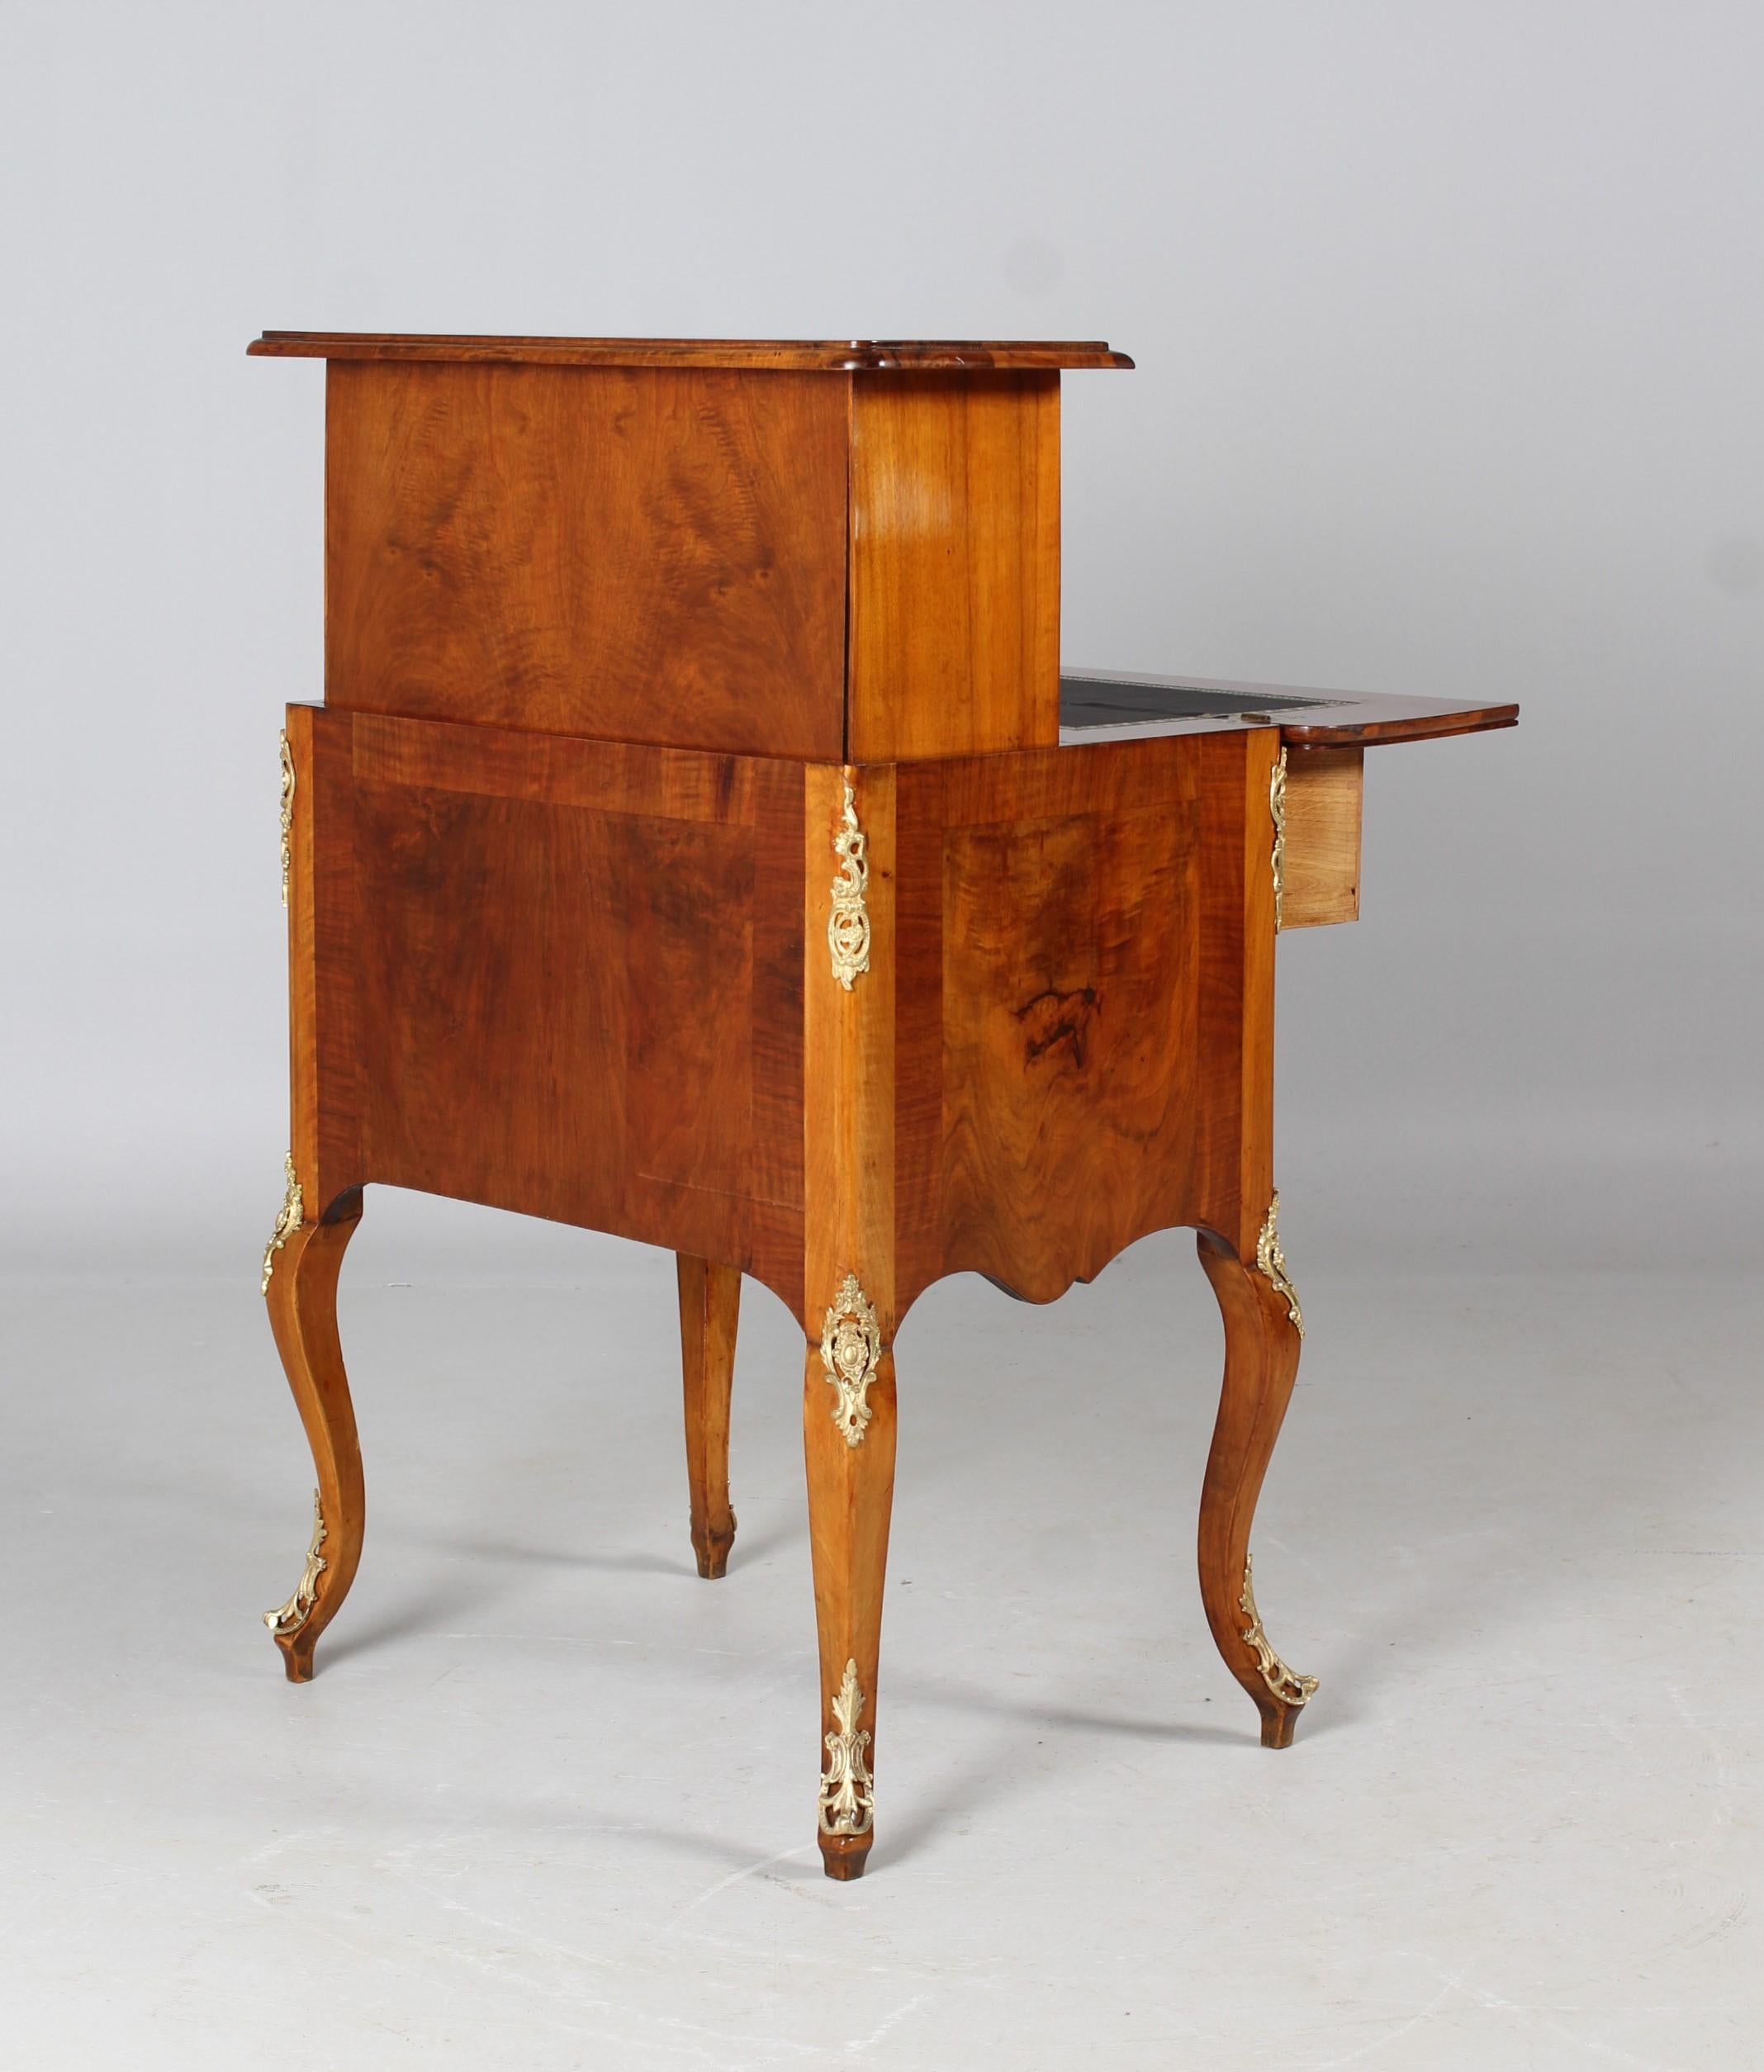 Secretaire à la Bourgogne, Transformation Table, Louis XV Style, 19th Century For Sale 8